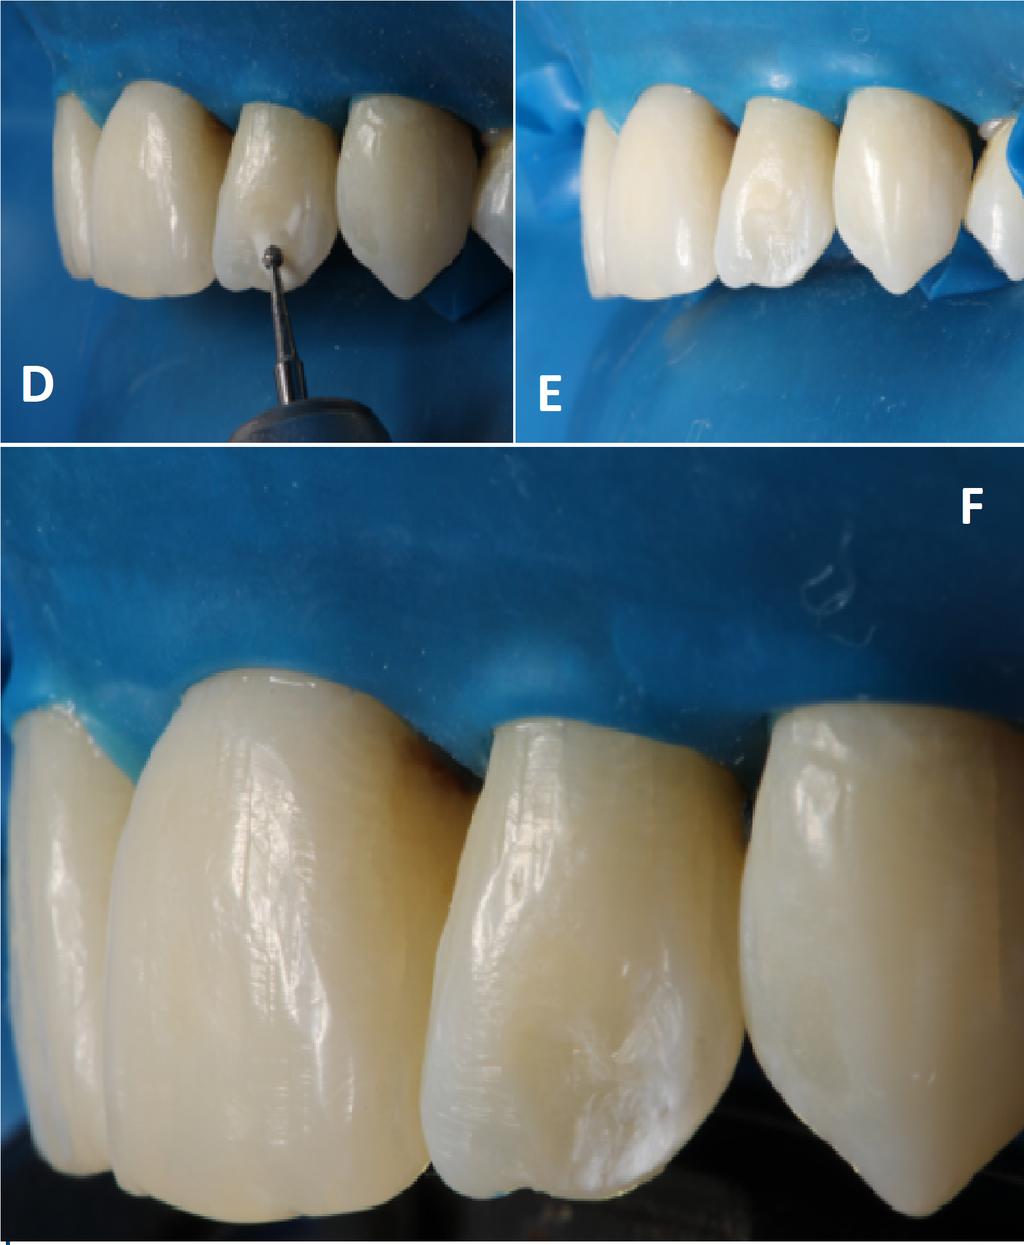 Figura 1 - Sorriso inicial vista frontal (A) e lateral (B)(C) Figura 2 - Remoção da lesão hipoplásica com ponta esférica diamantata nº 1012 (D) e vista do dente preparado sem a lesão (E) e final após